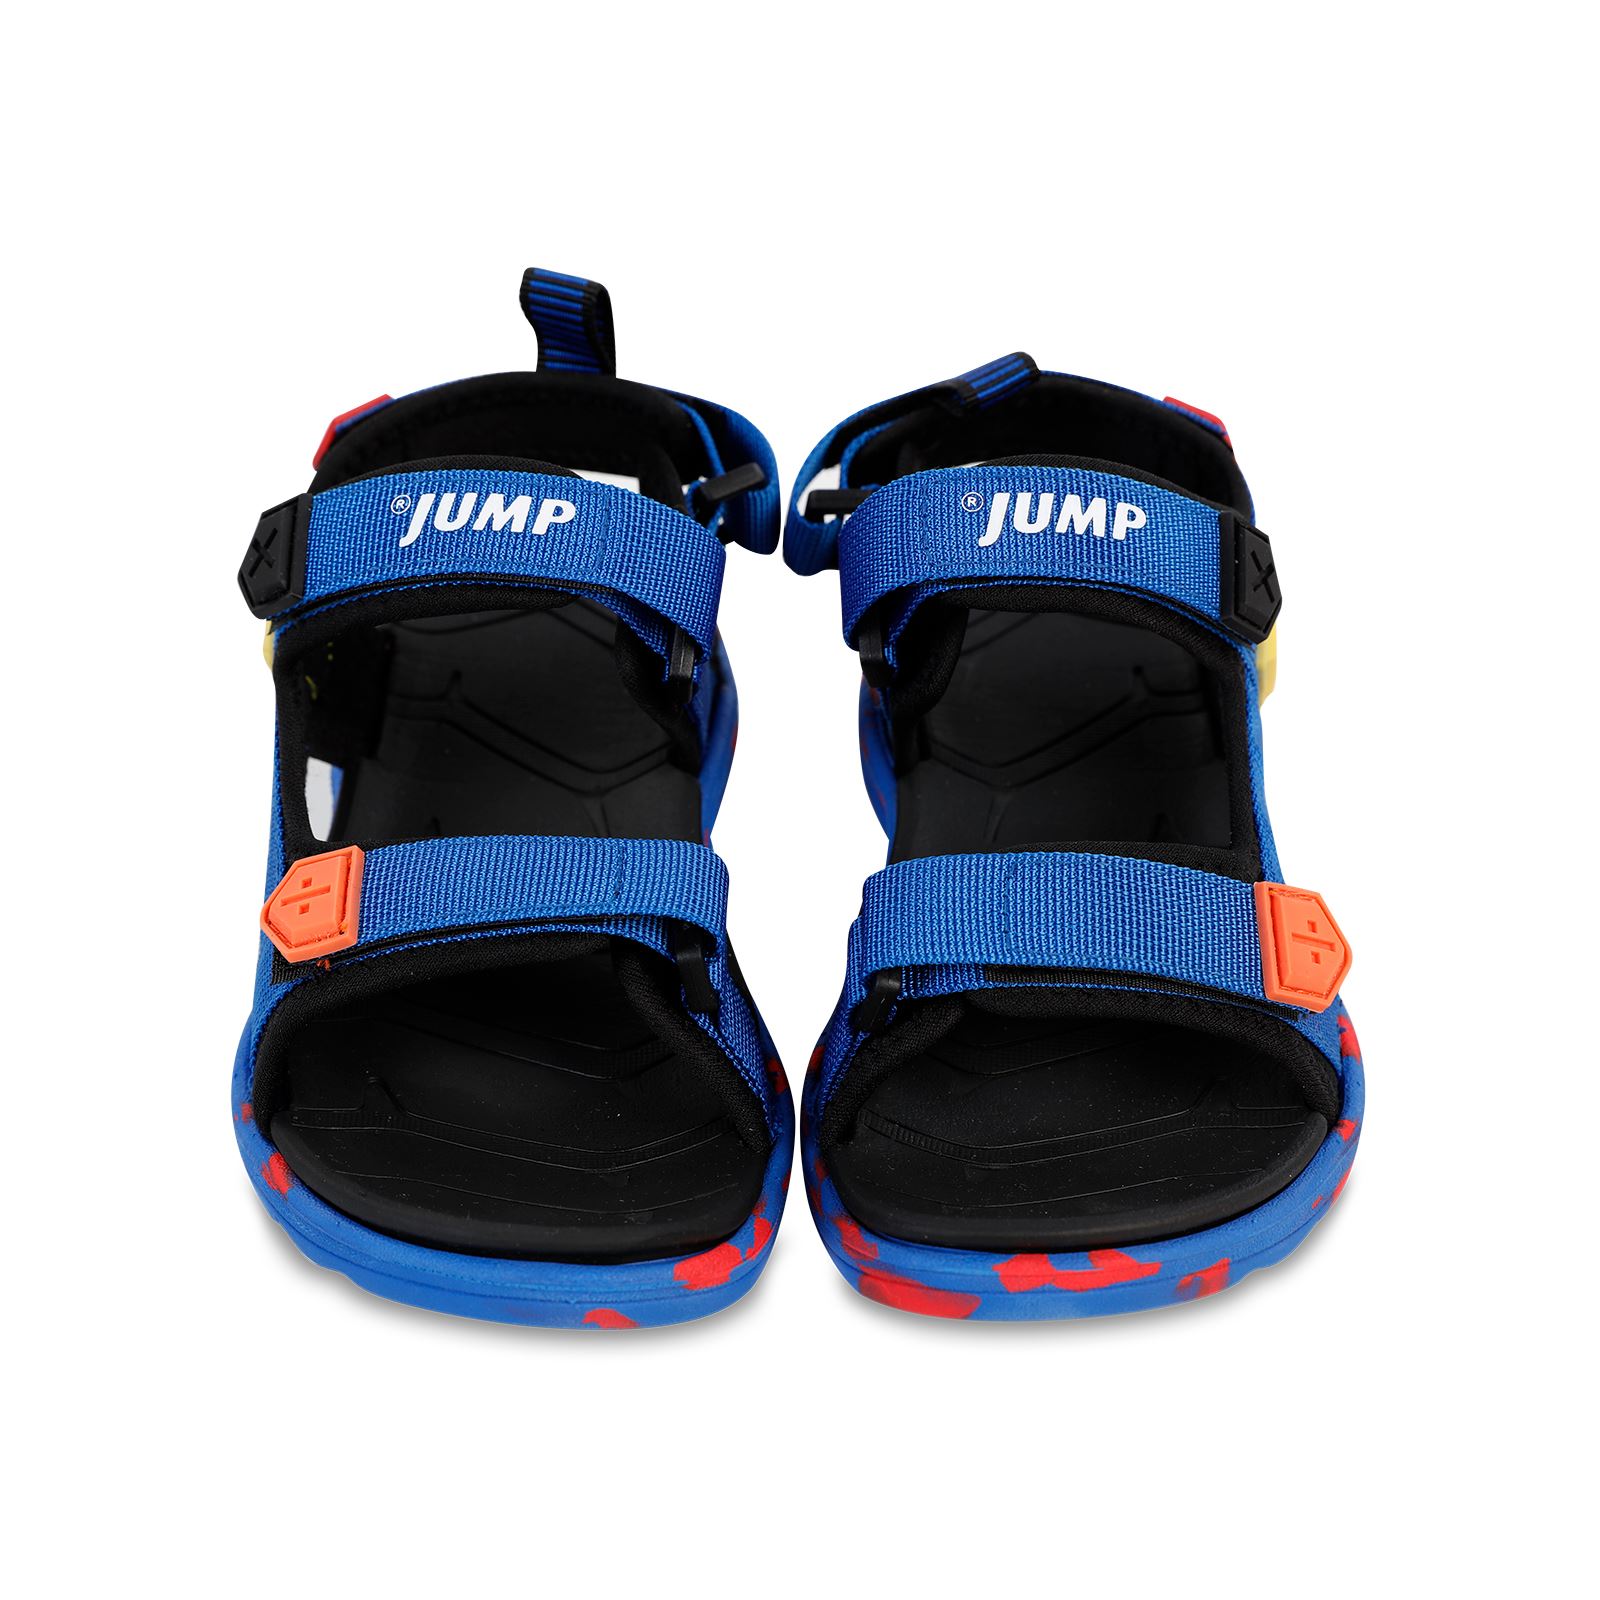 Jump Erkek Çocuk Sandalet 31-35 Numara Mavi